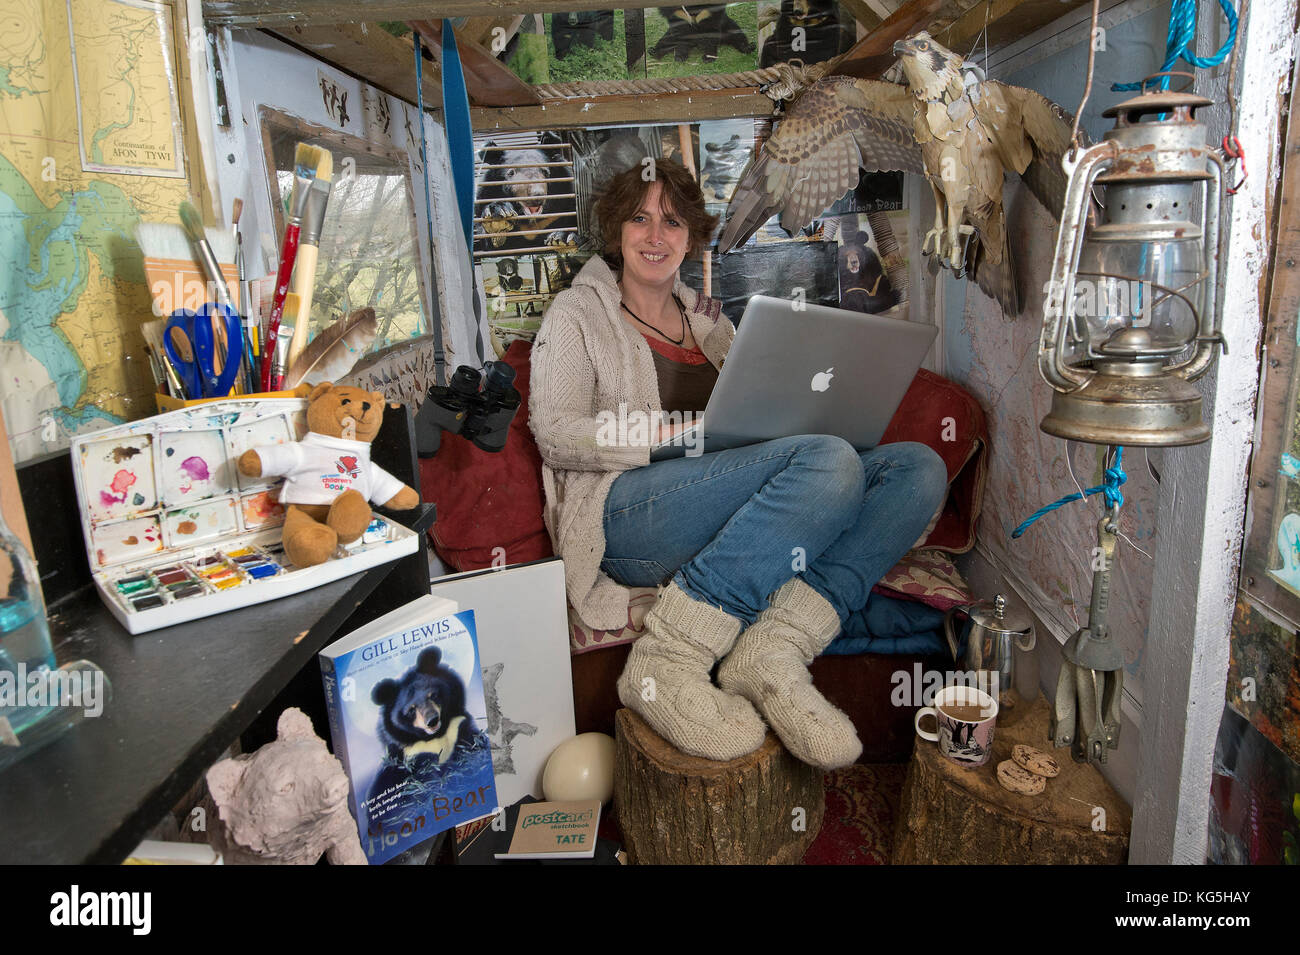 Gill Lewis, bambini autore nella sua casa sull'albero. Foto Stock